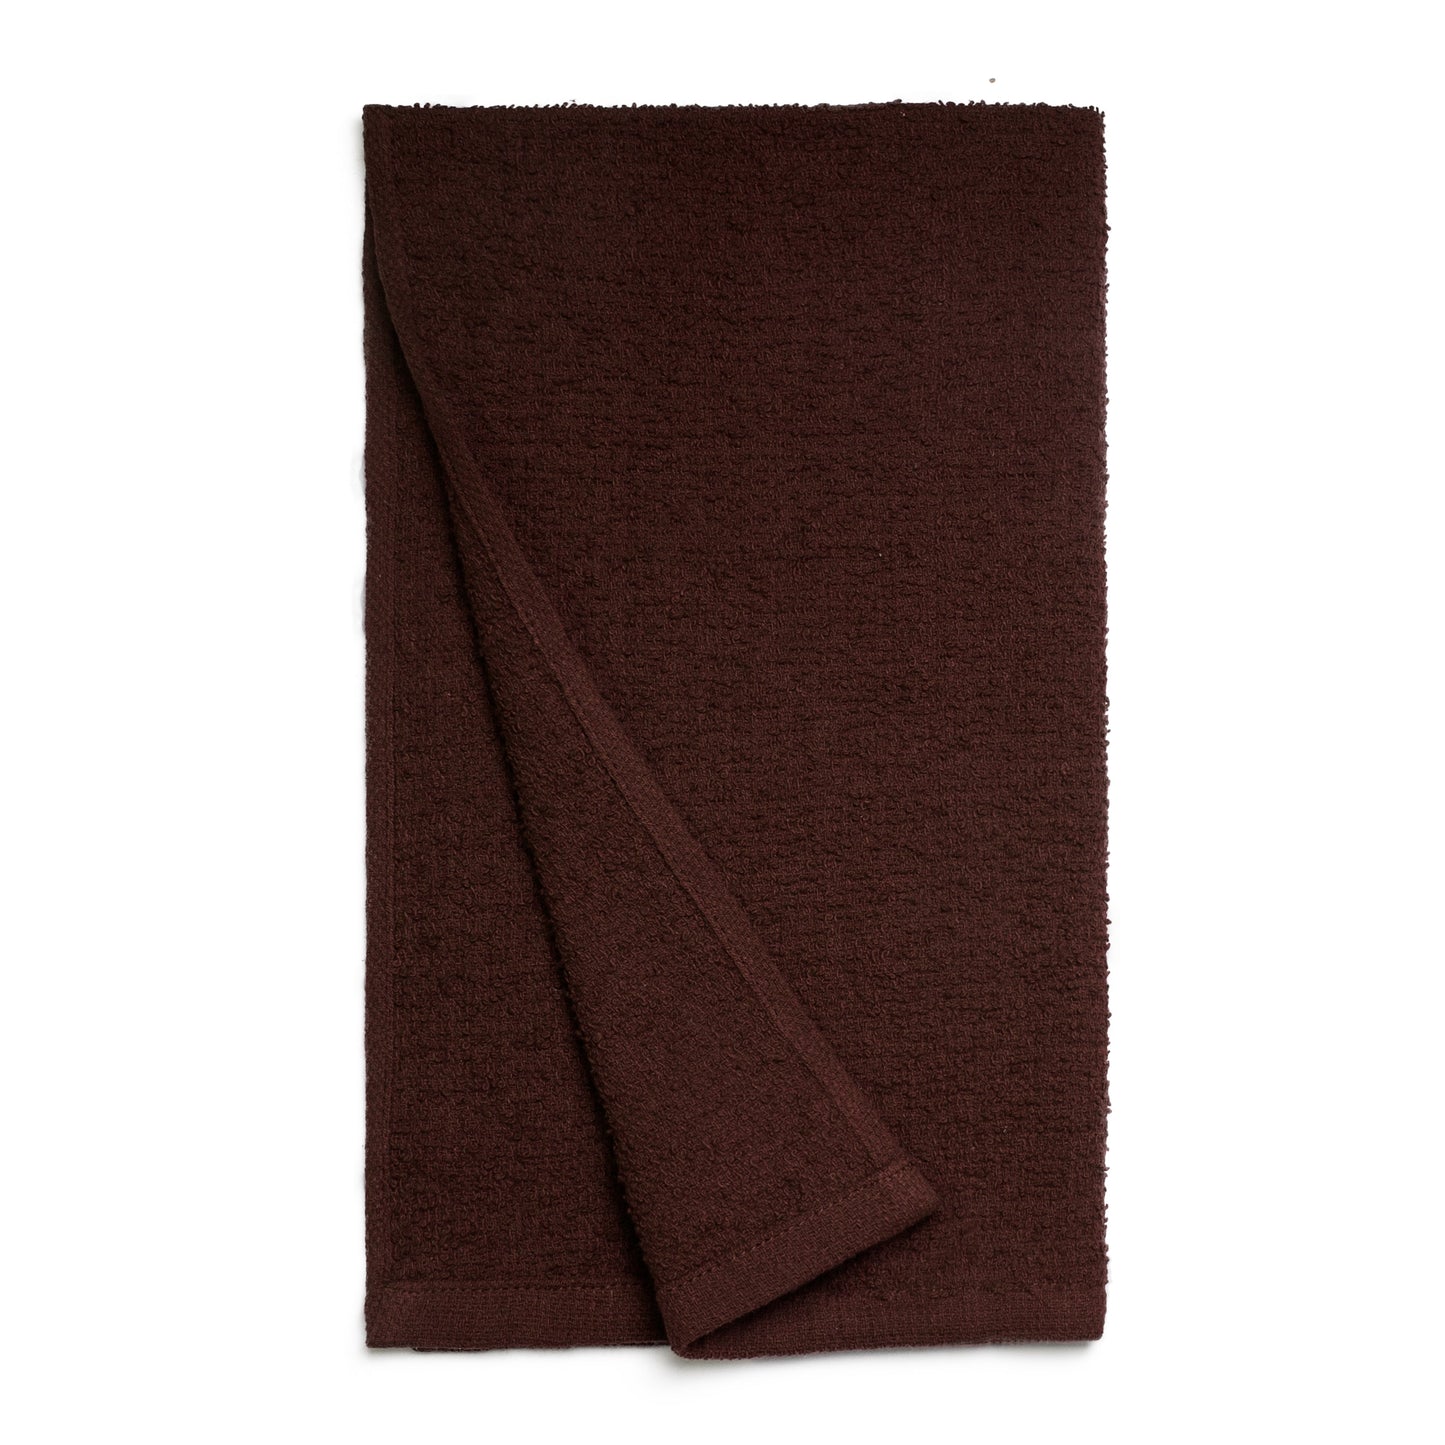 American Dawn | Brown 15X25 Inch Econo Neo Salon Towels